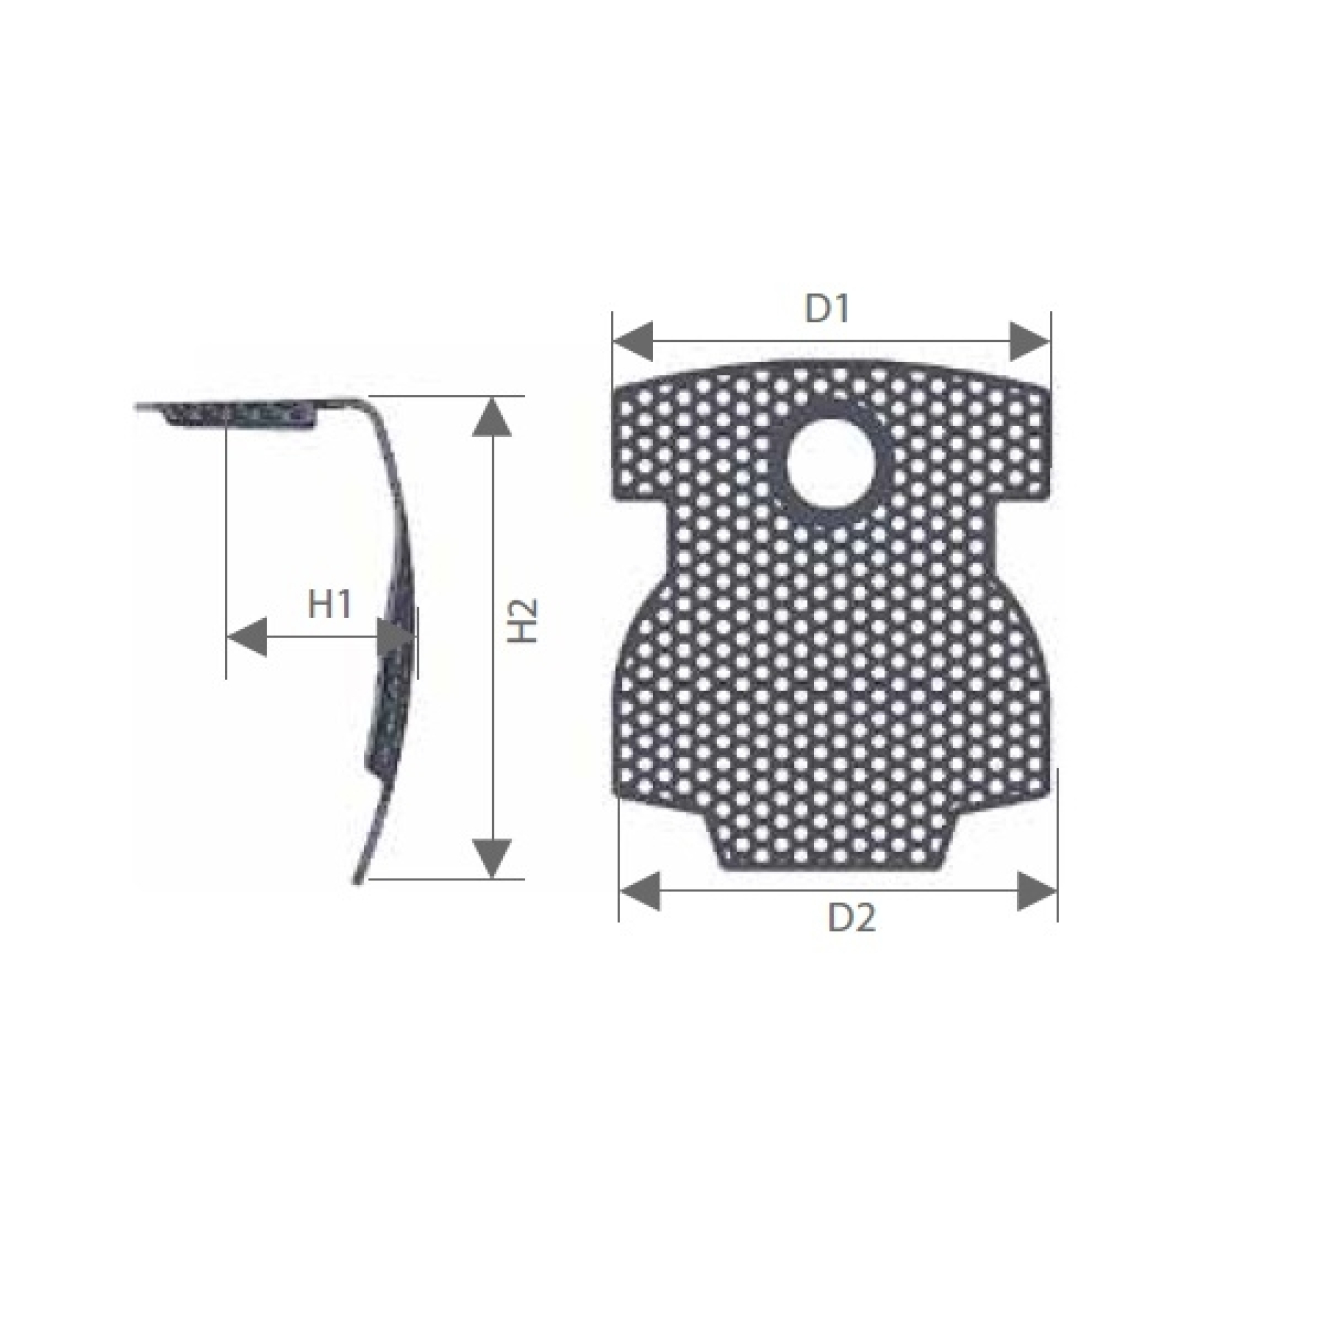 TM210127 Титановая сетка (мембрана) с шестигранными отверстиями для спейсеров, двухсторонняя, Mr.Curette Tech, Южная Корея